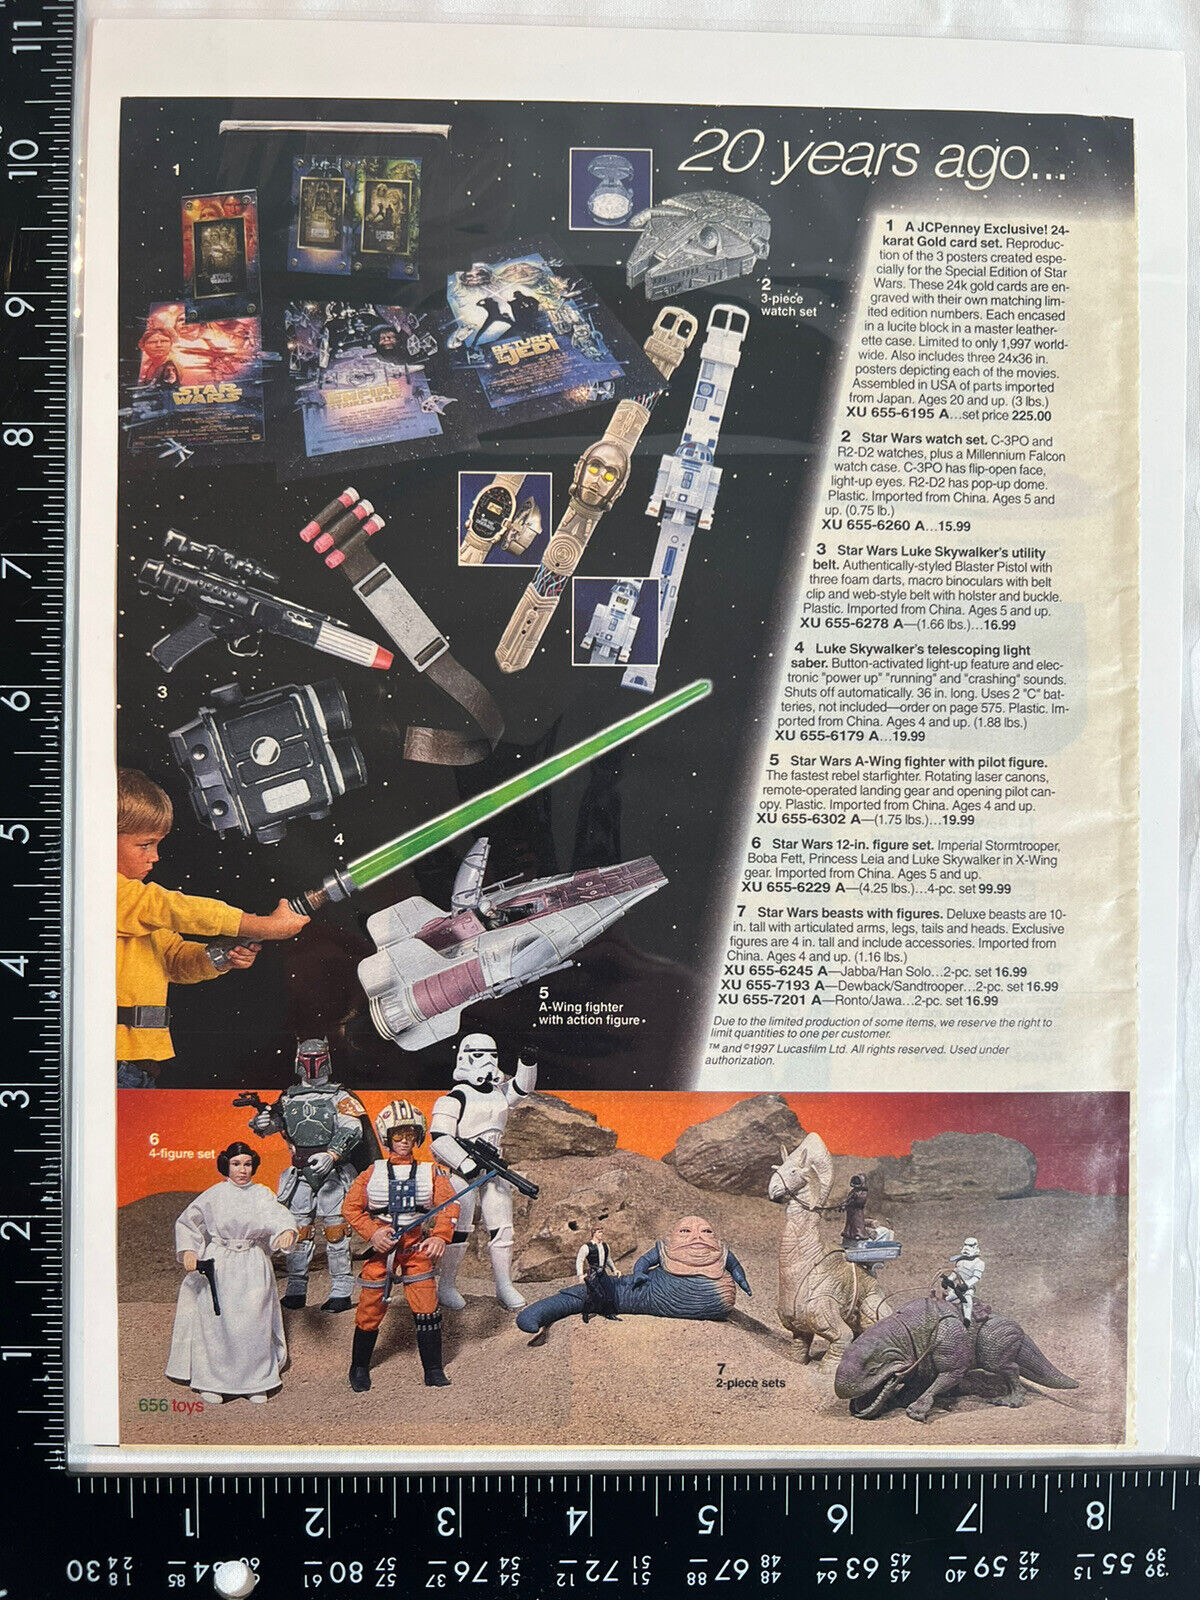 2 Rare vintage print Ad Star Wars, Darth Vader, Lightsaber, A-wing, Boba Fett￼